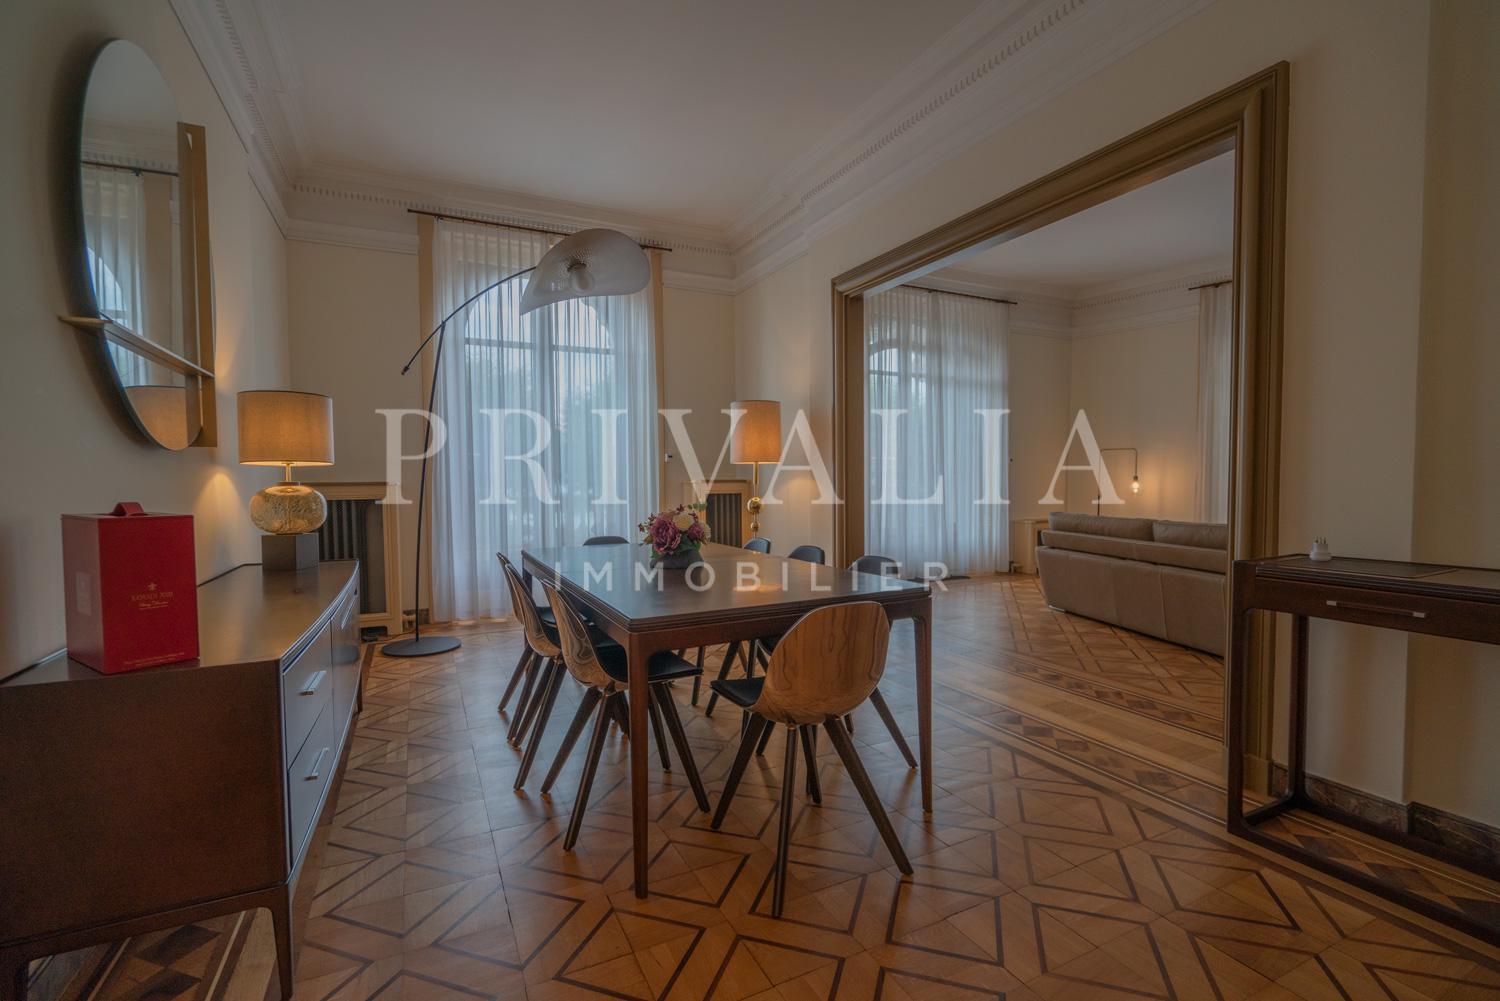 PrivaliaUnique : appartement XXème siècle avec terrasse situé au sein de la Maison Royale, Quai Gustave-Ador